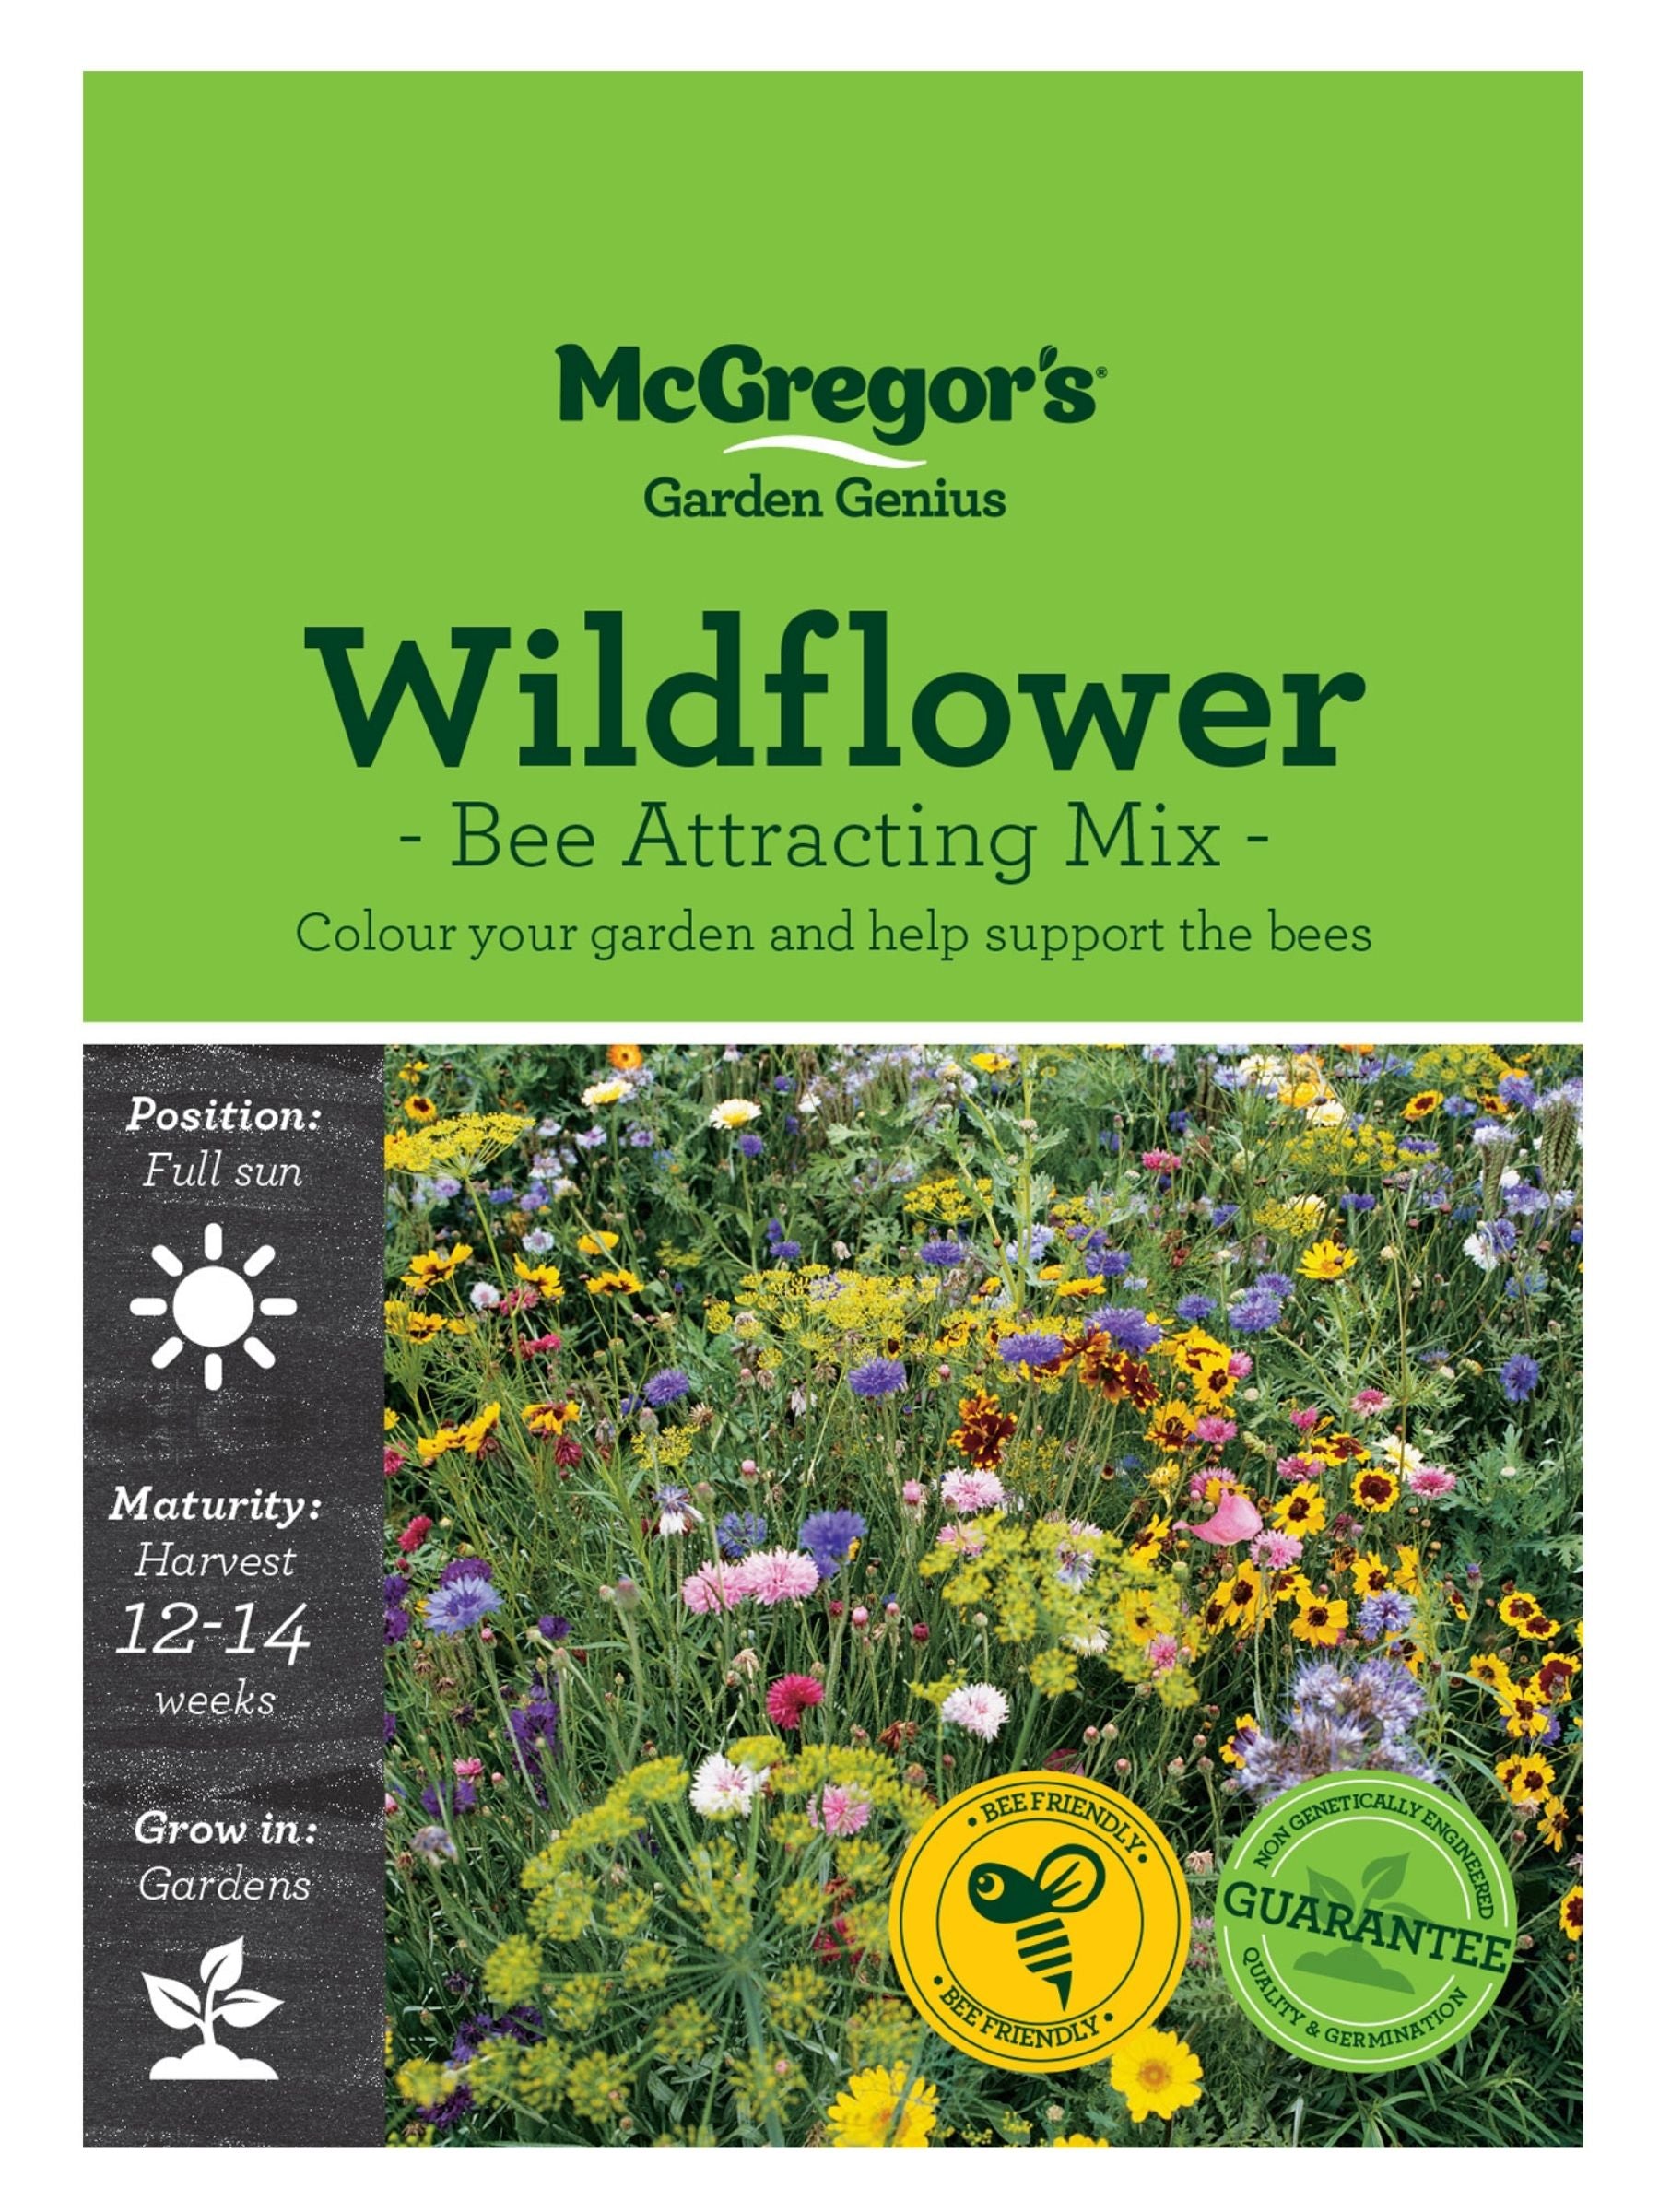 Bee-friendly wildflower seeds